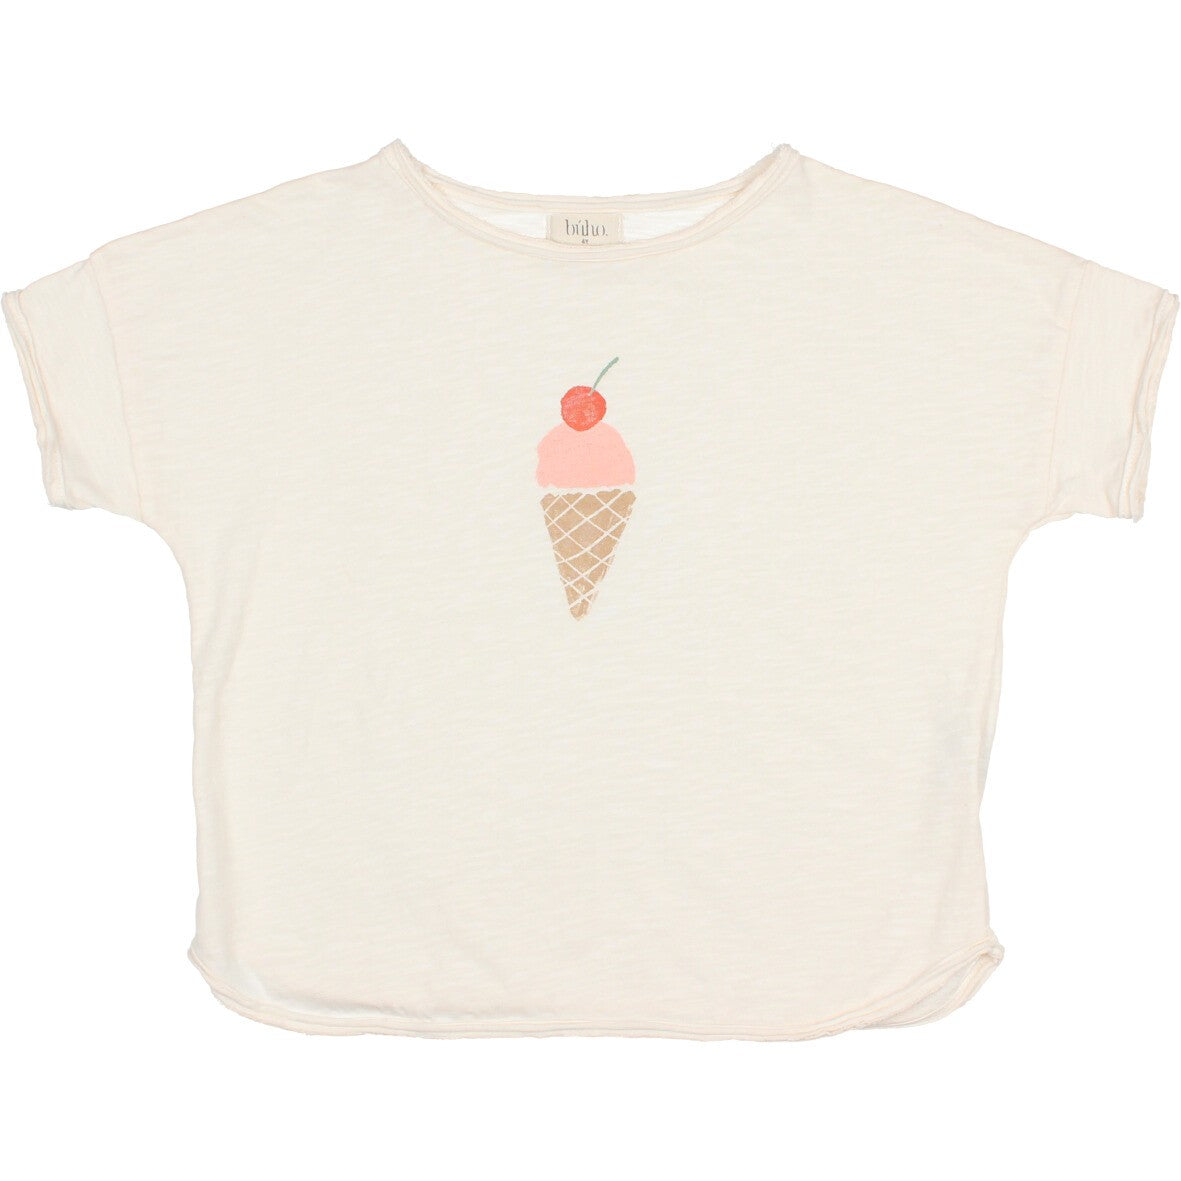 Camiseta helado